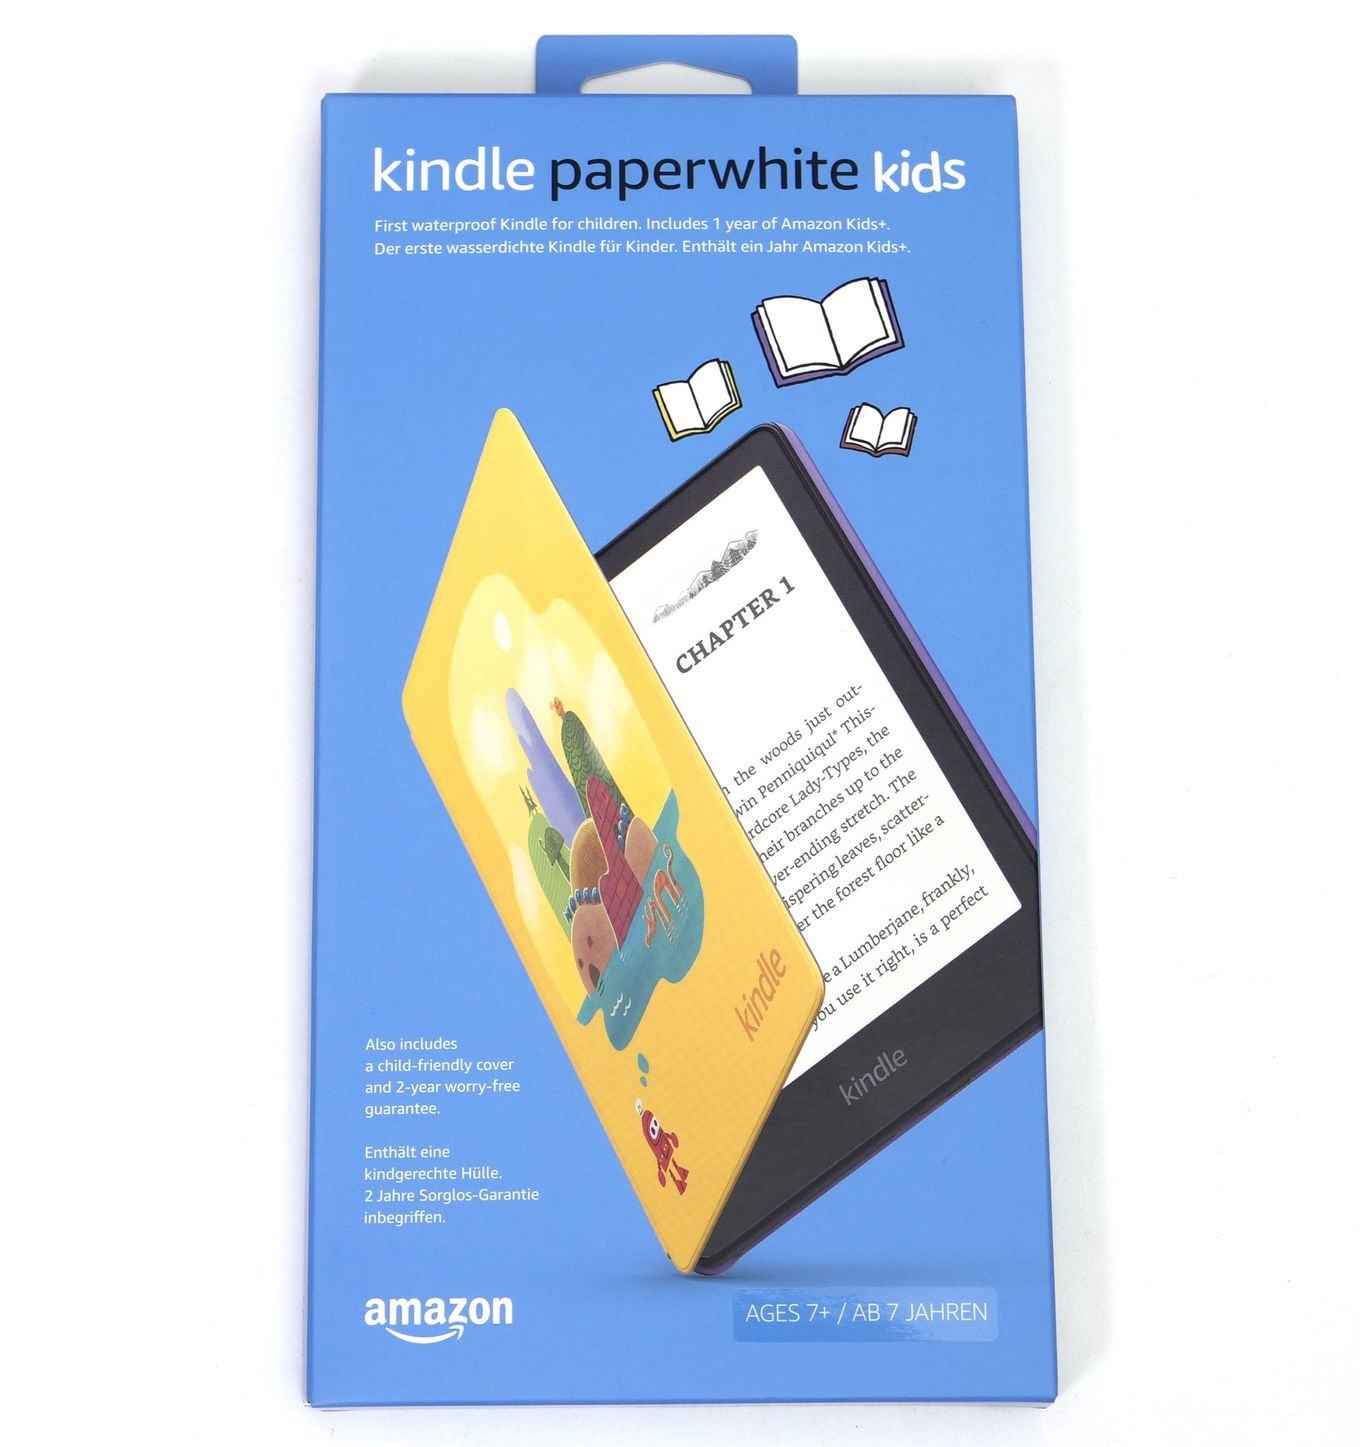 Kindle paperwhite adalah